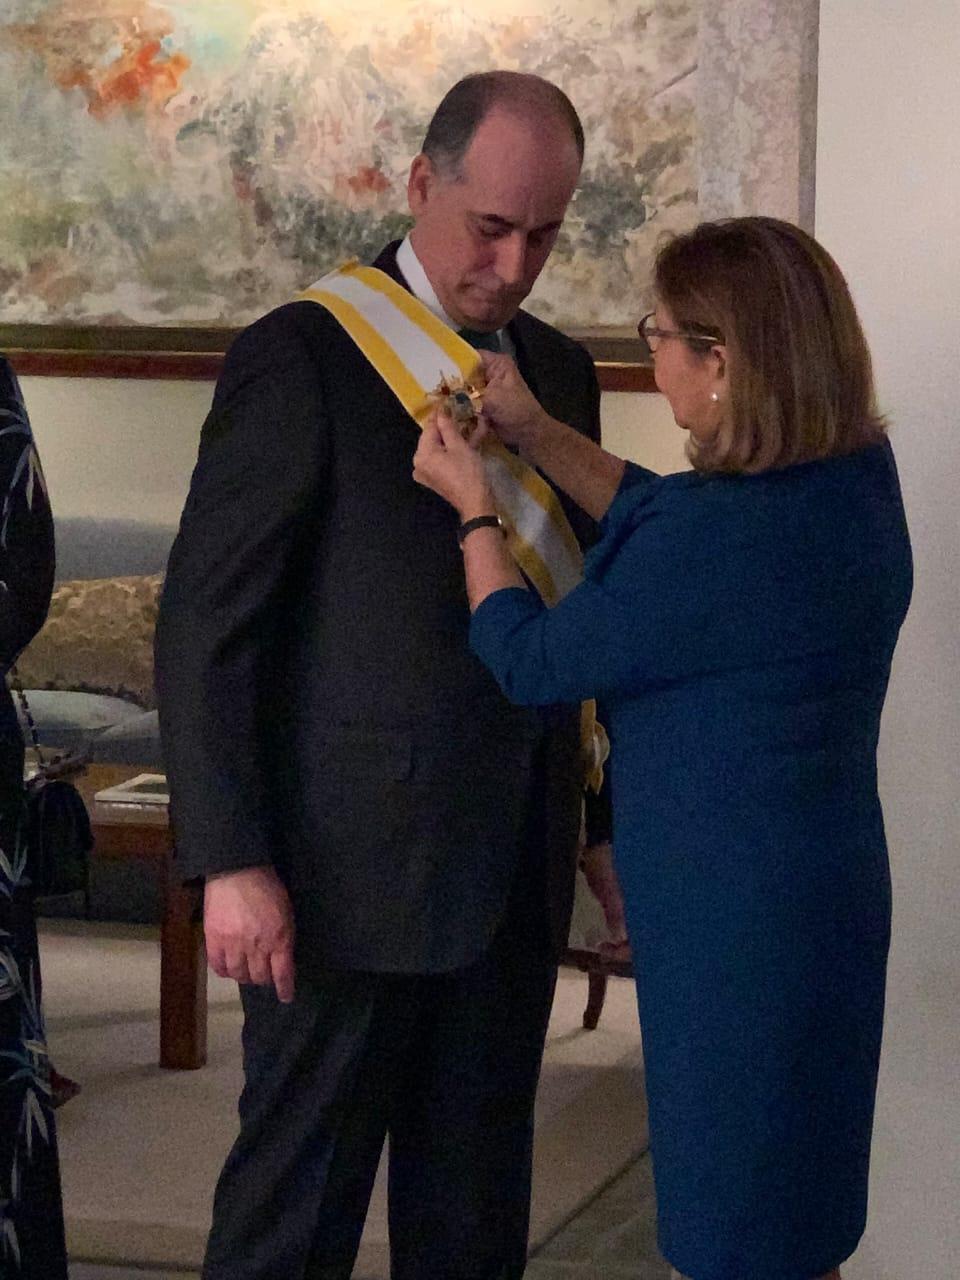 سفيرة إسبانيا في الأردن تسلم السفير غسان المجالي "وسام الصليب الأعظم من وسام إيزابيل الكاثوليكية". (المملكة)